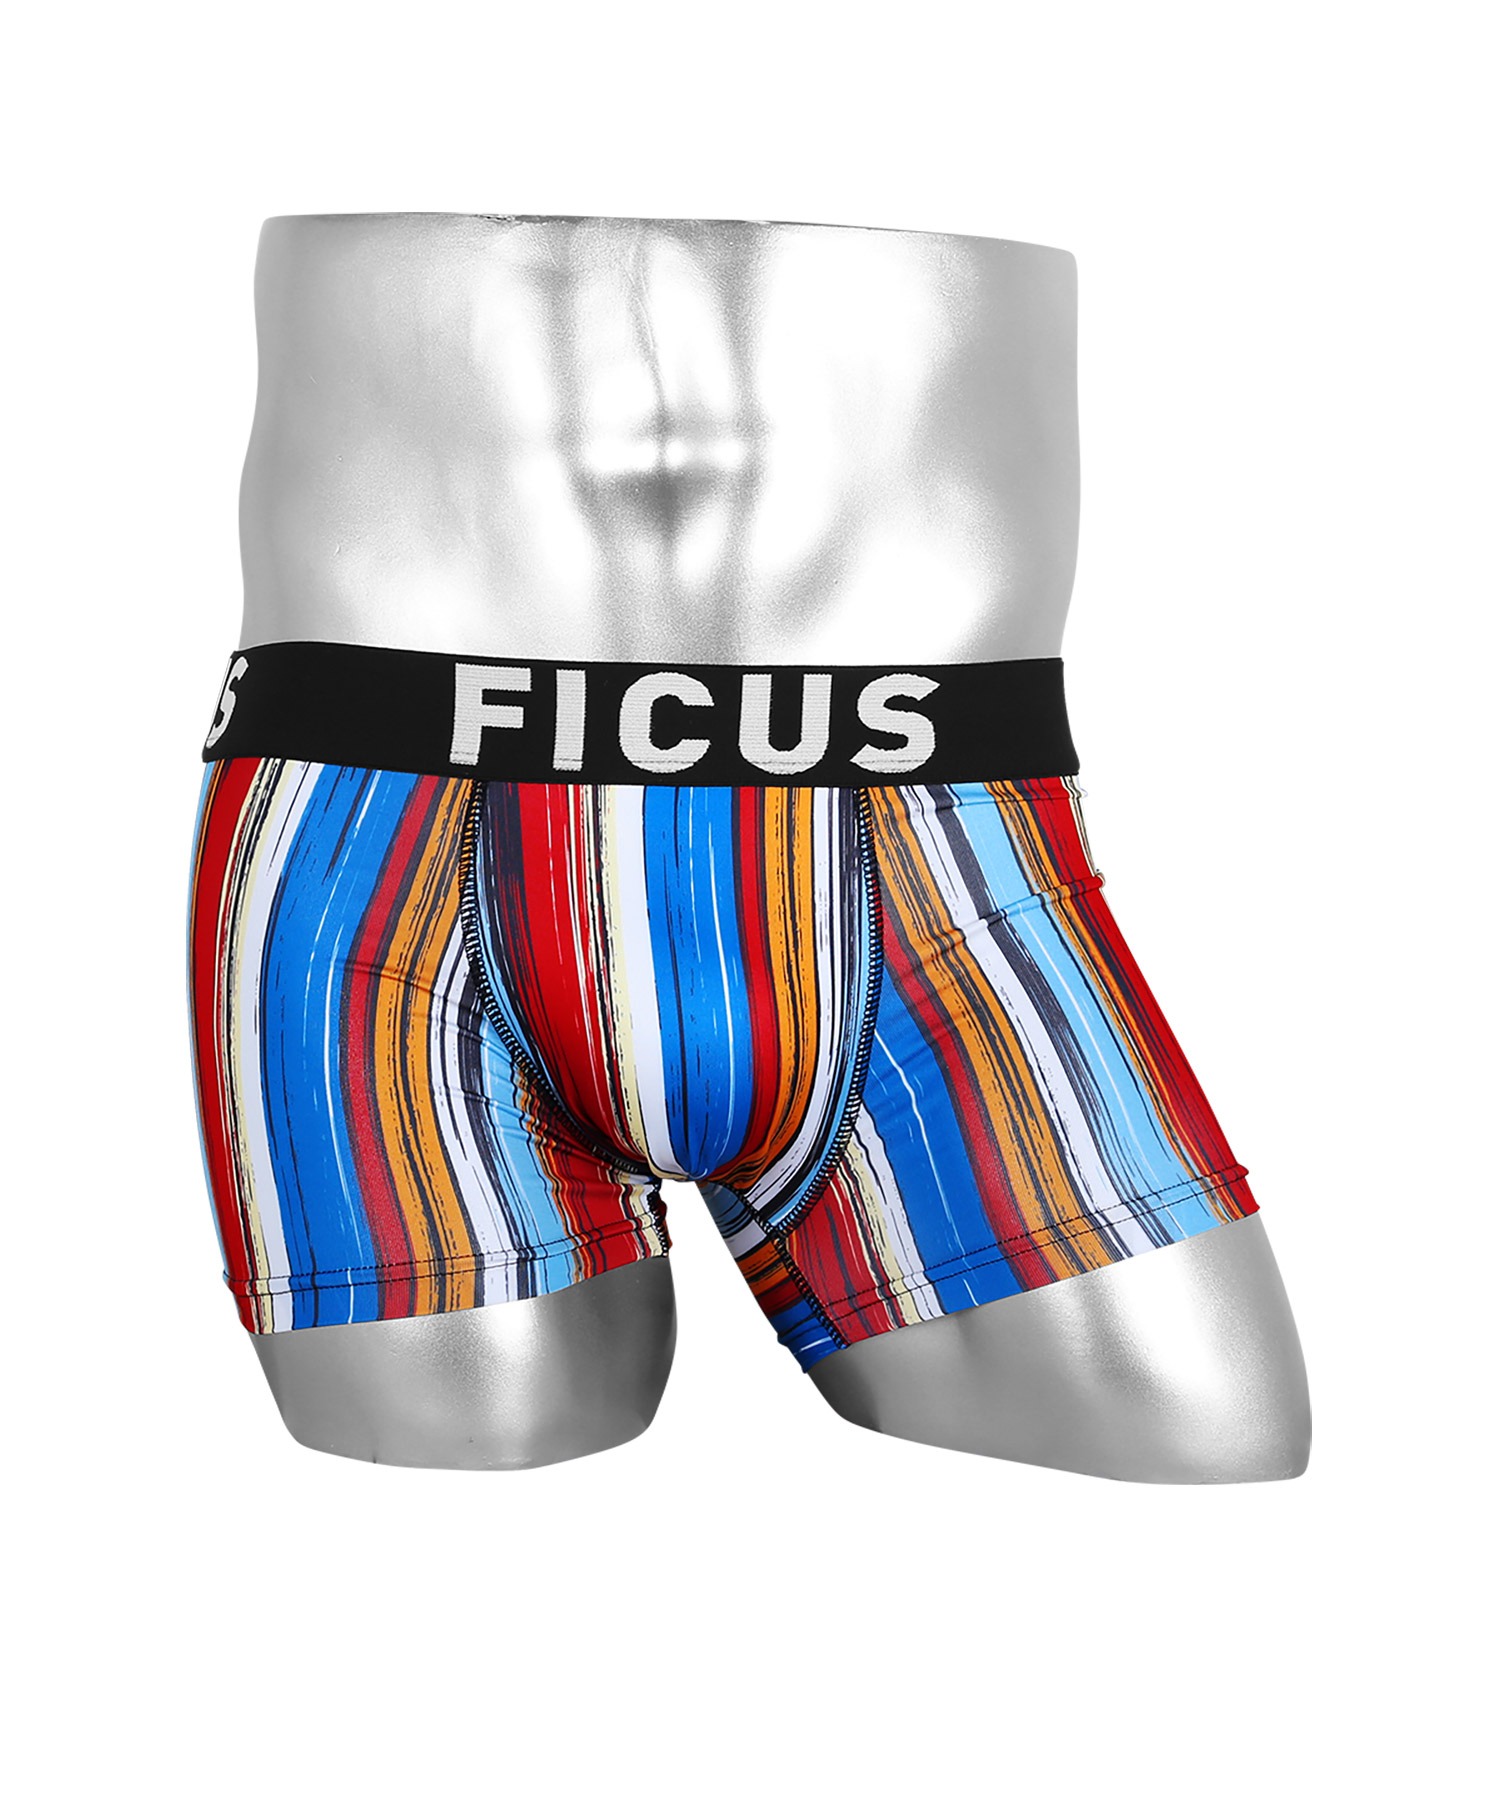 FICUSFICUS フィークス ボクサーパンツ メンズ アンダーウェア 品質満点 カラフル 倉 下着 ツルツル ストライプ